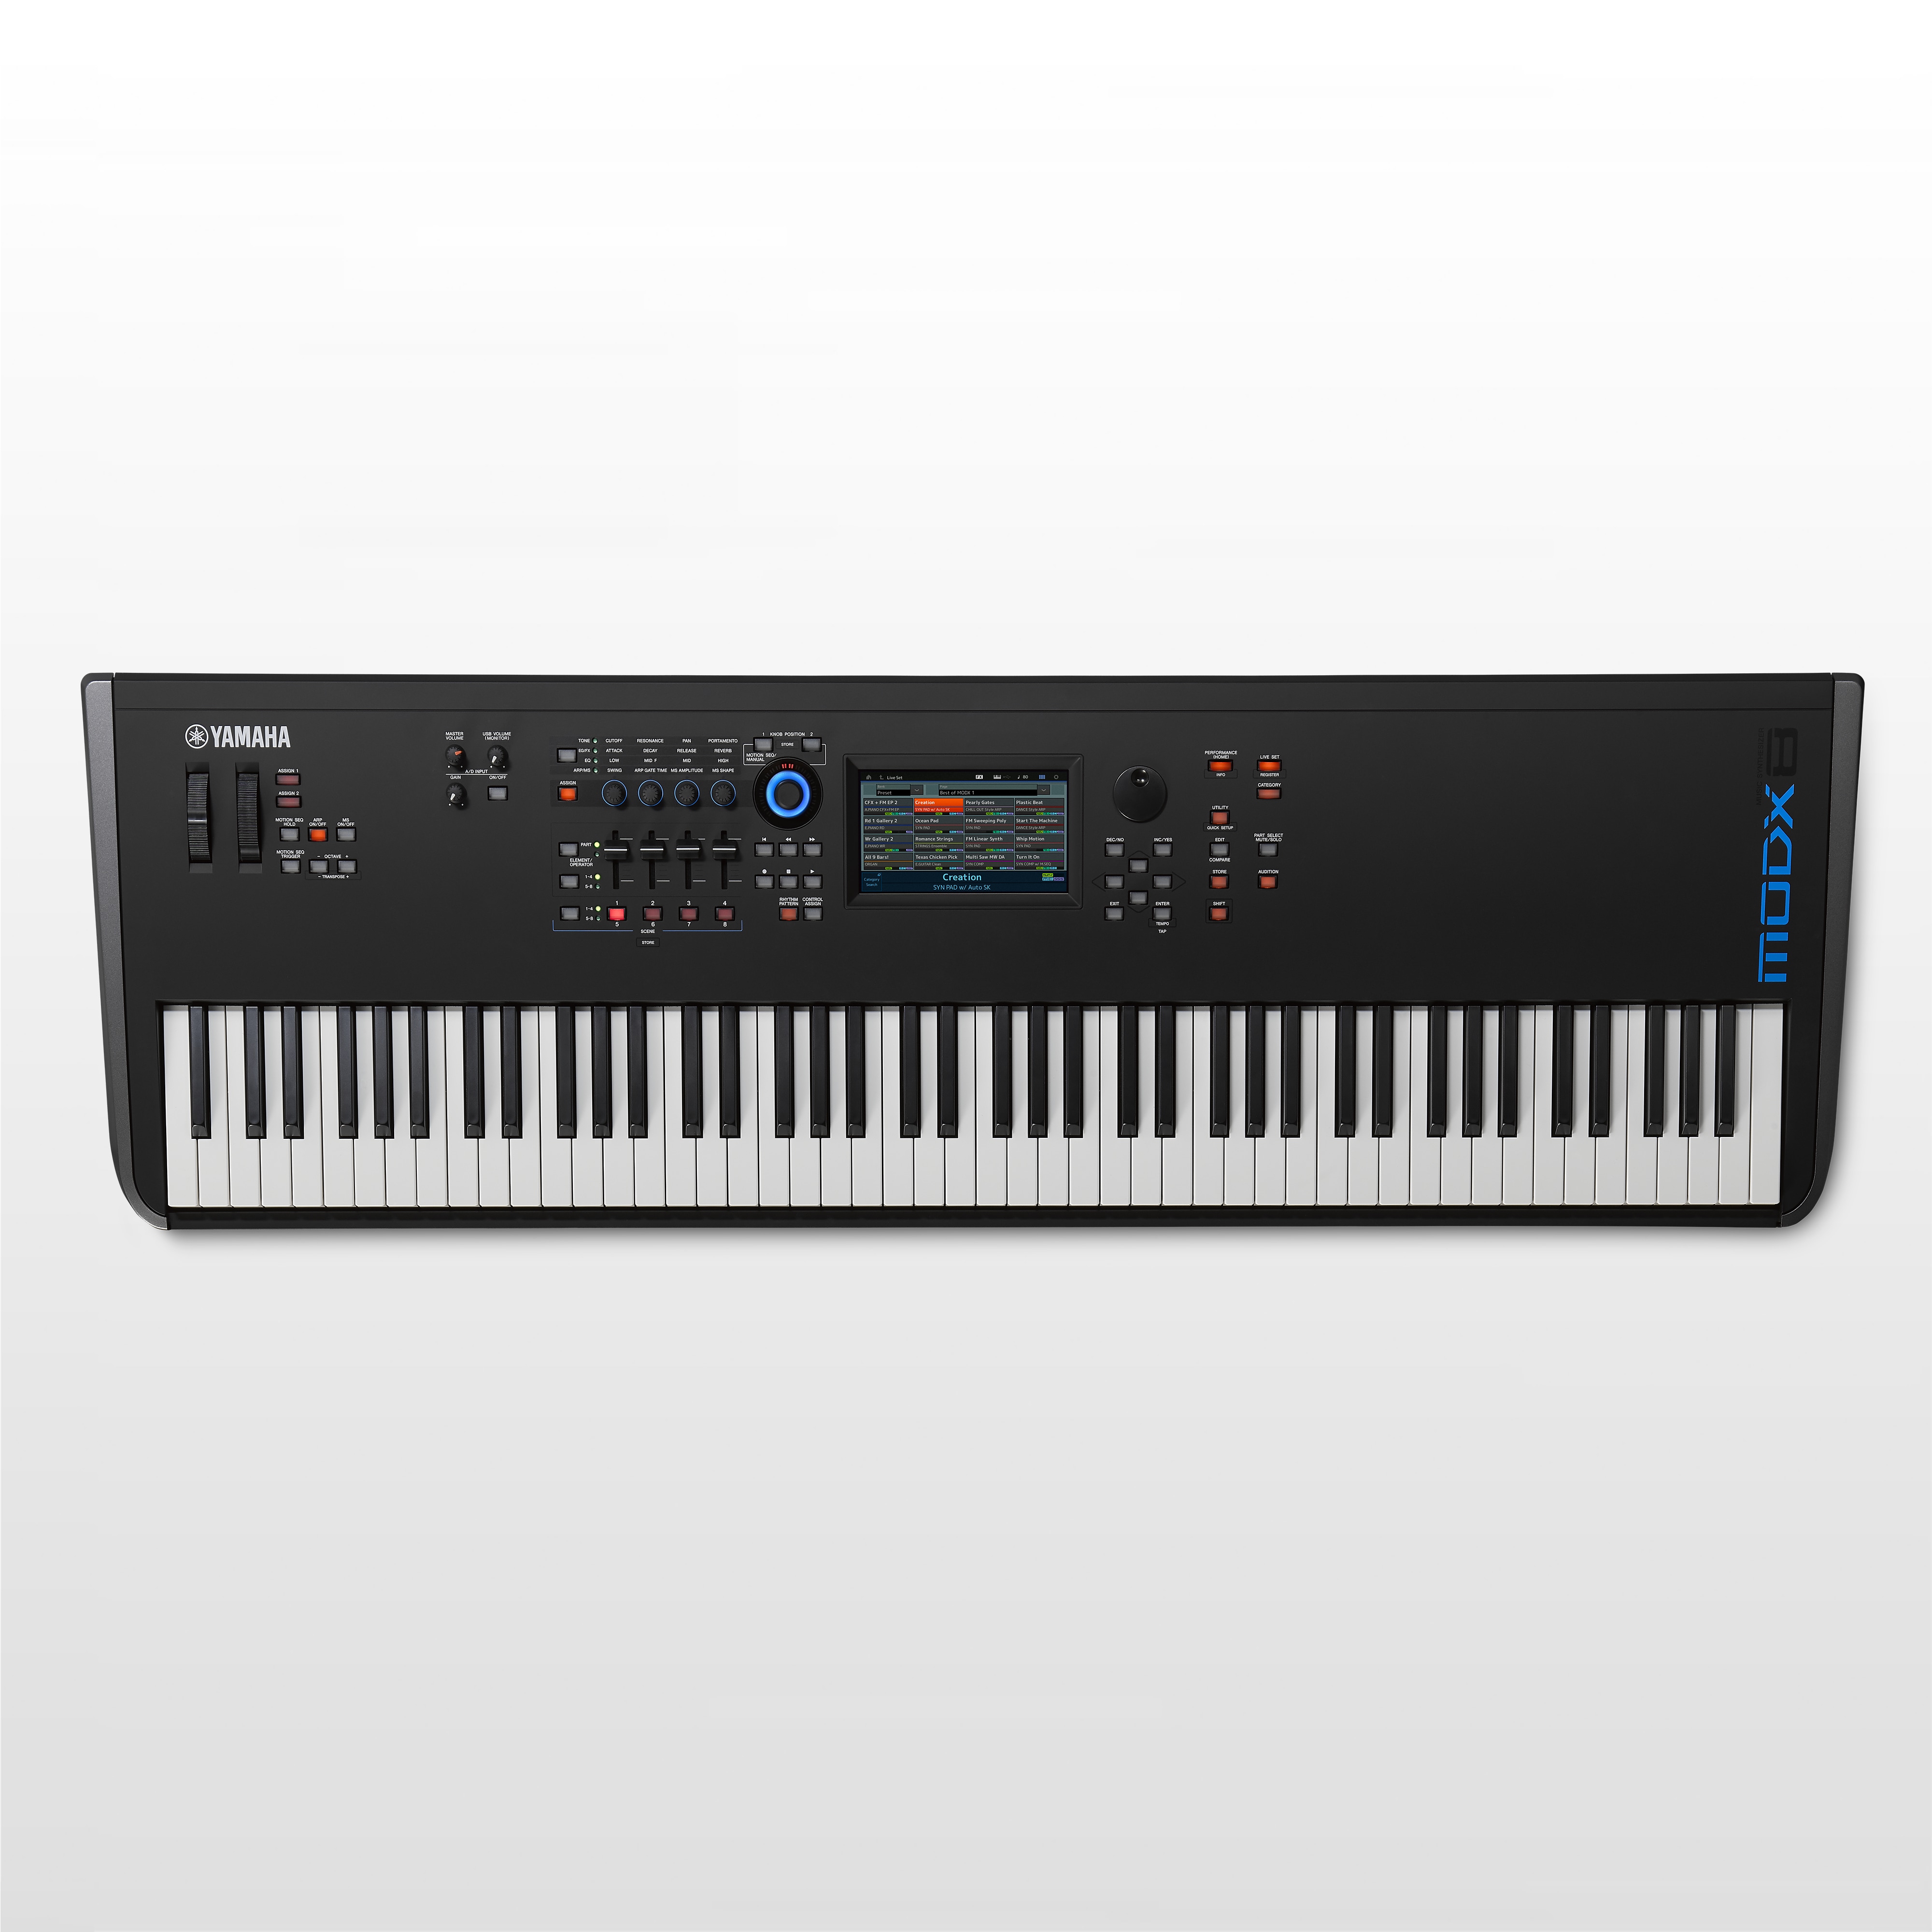 MODX - Sound Library - Synthesizers và Thiết bị làm nhạc - Thiết bị ...